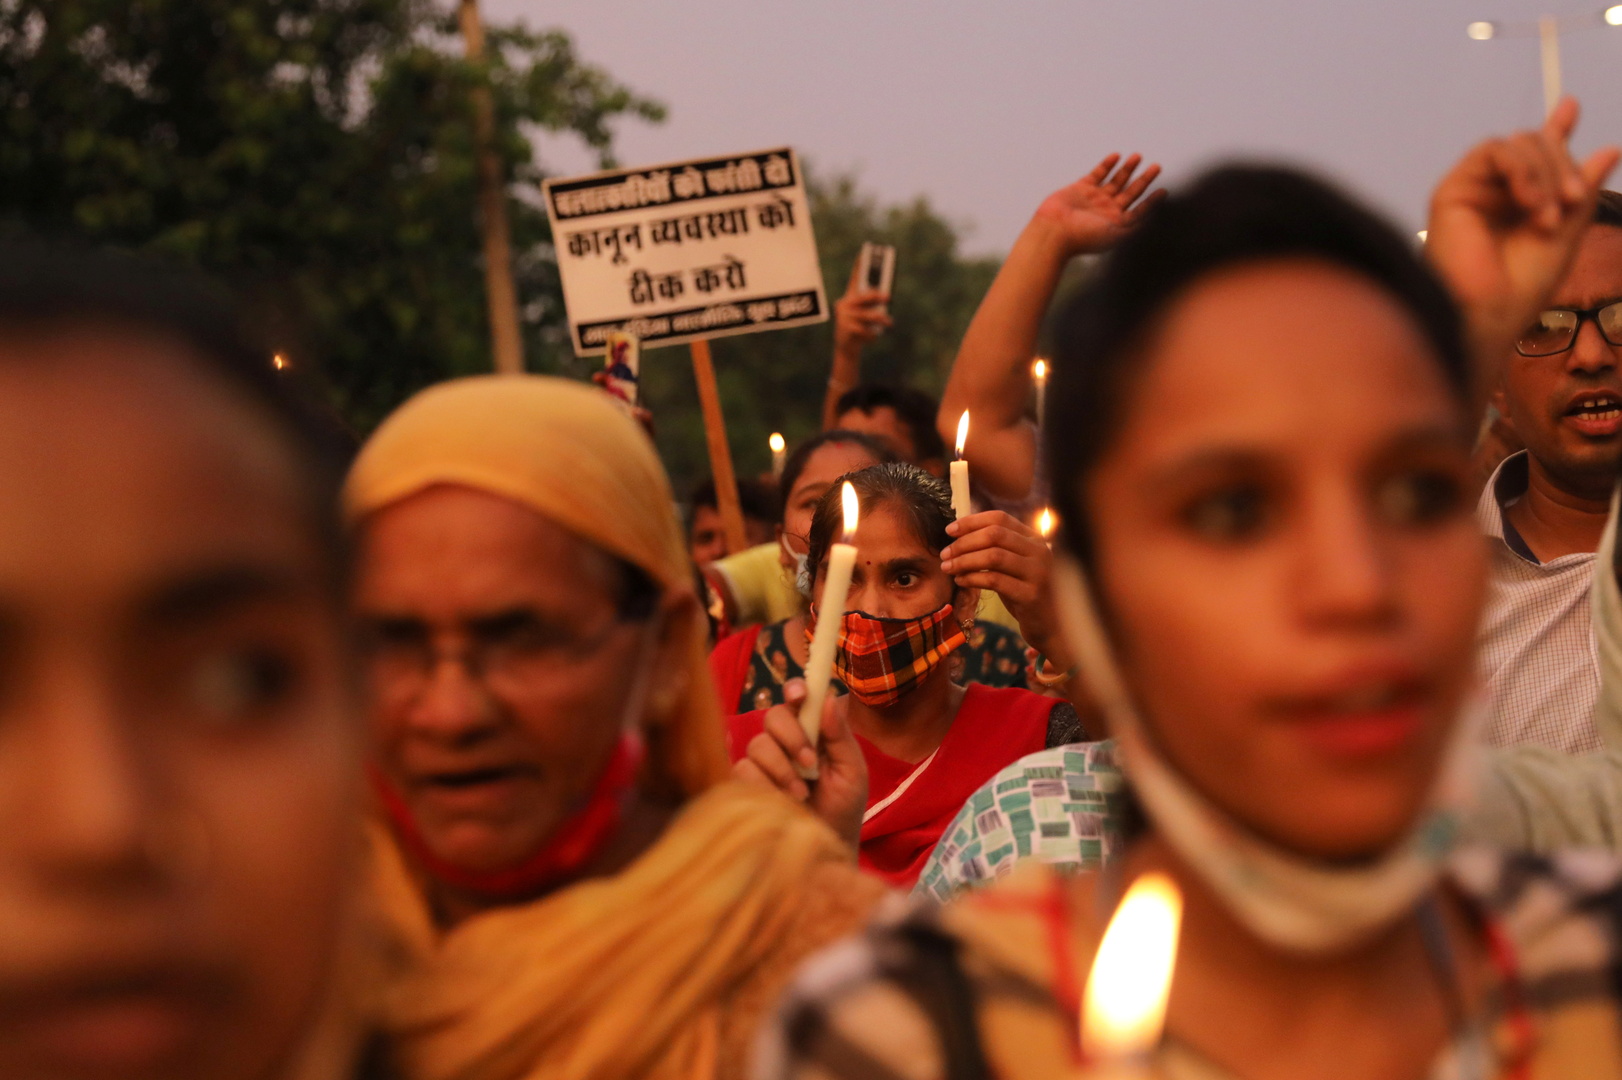 احتجاجات في ولاية هندية ضد قرار يمنع ارتداء الحجاب في بعض المدارس